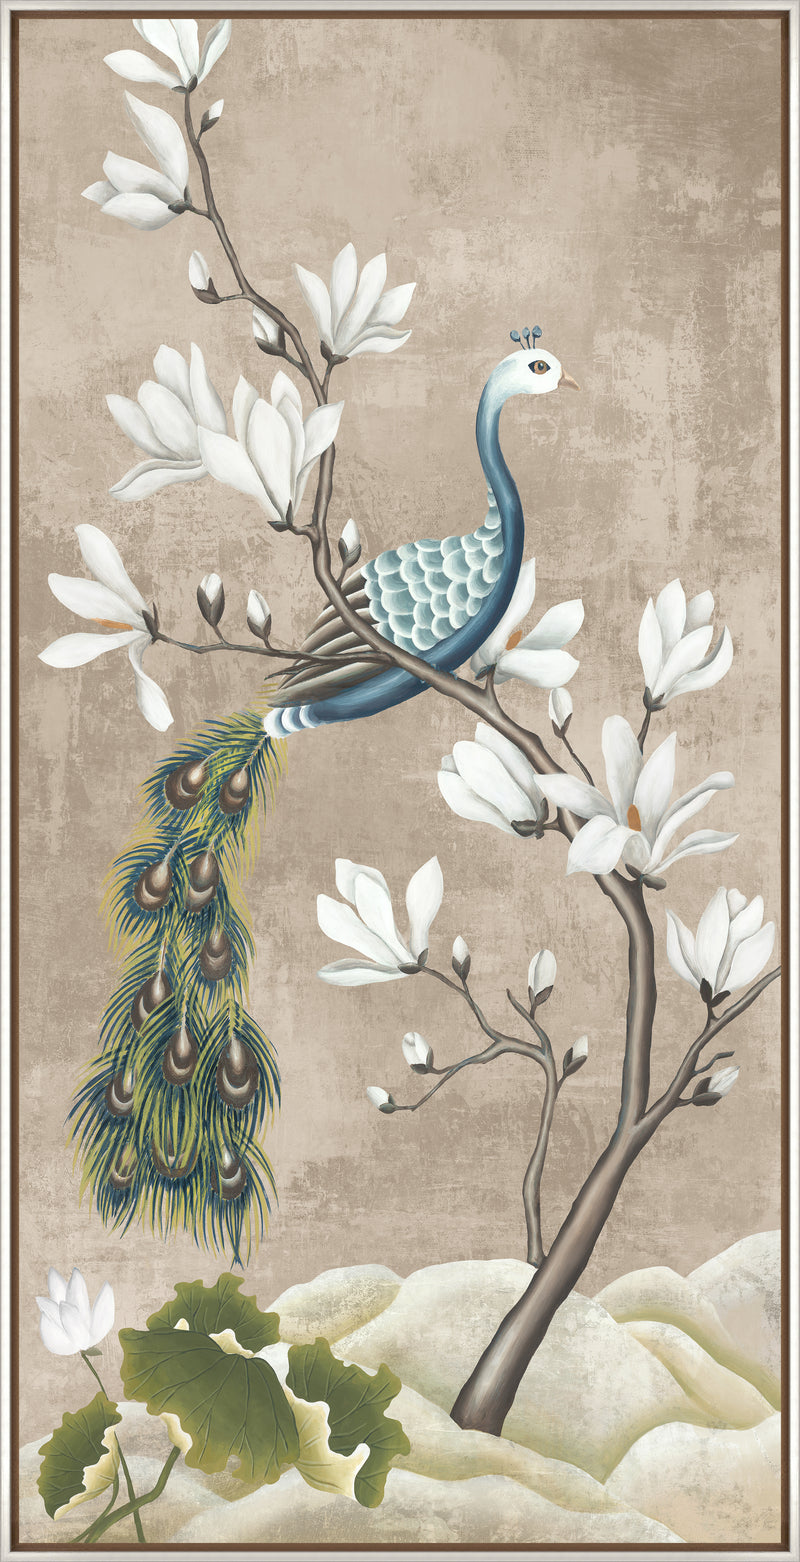 Birds with Magnolias I